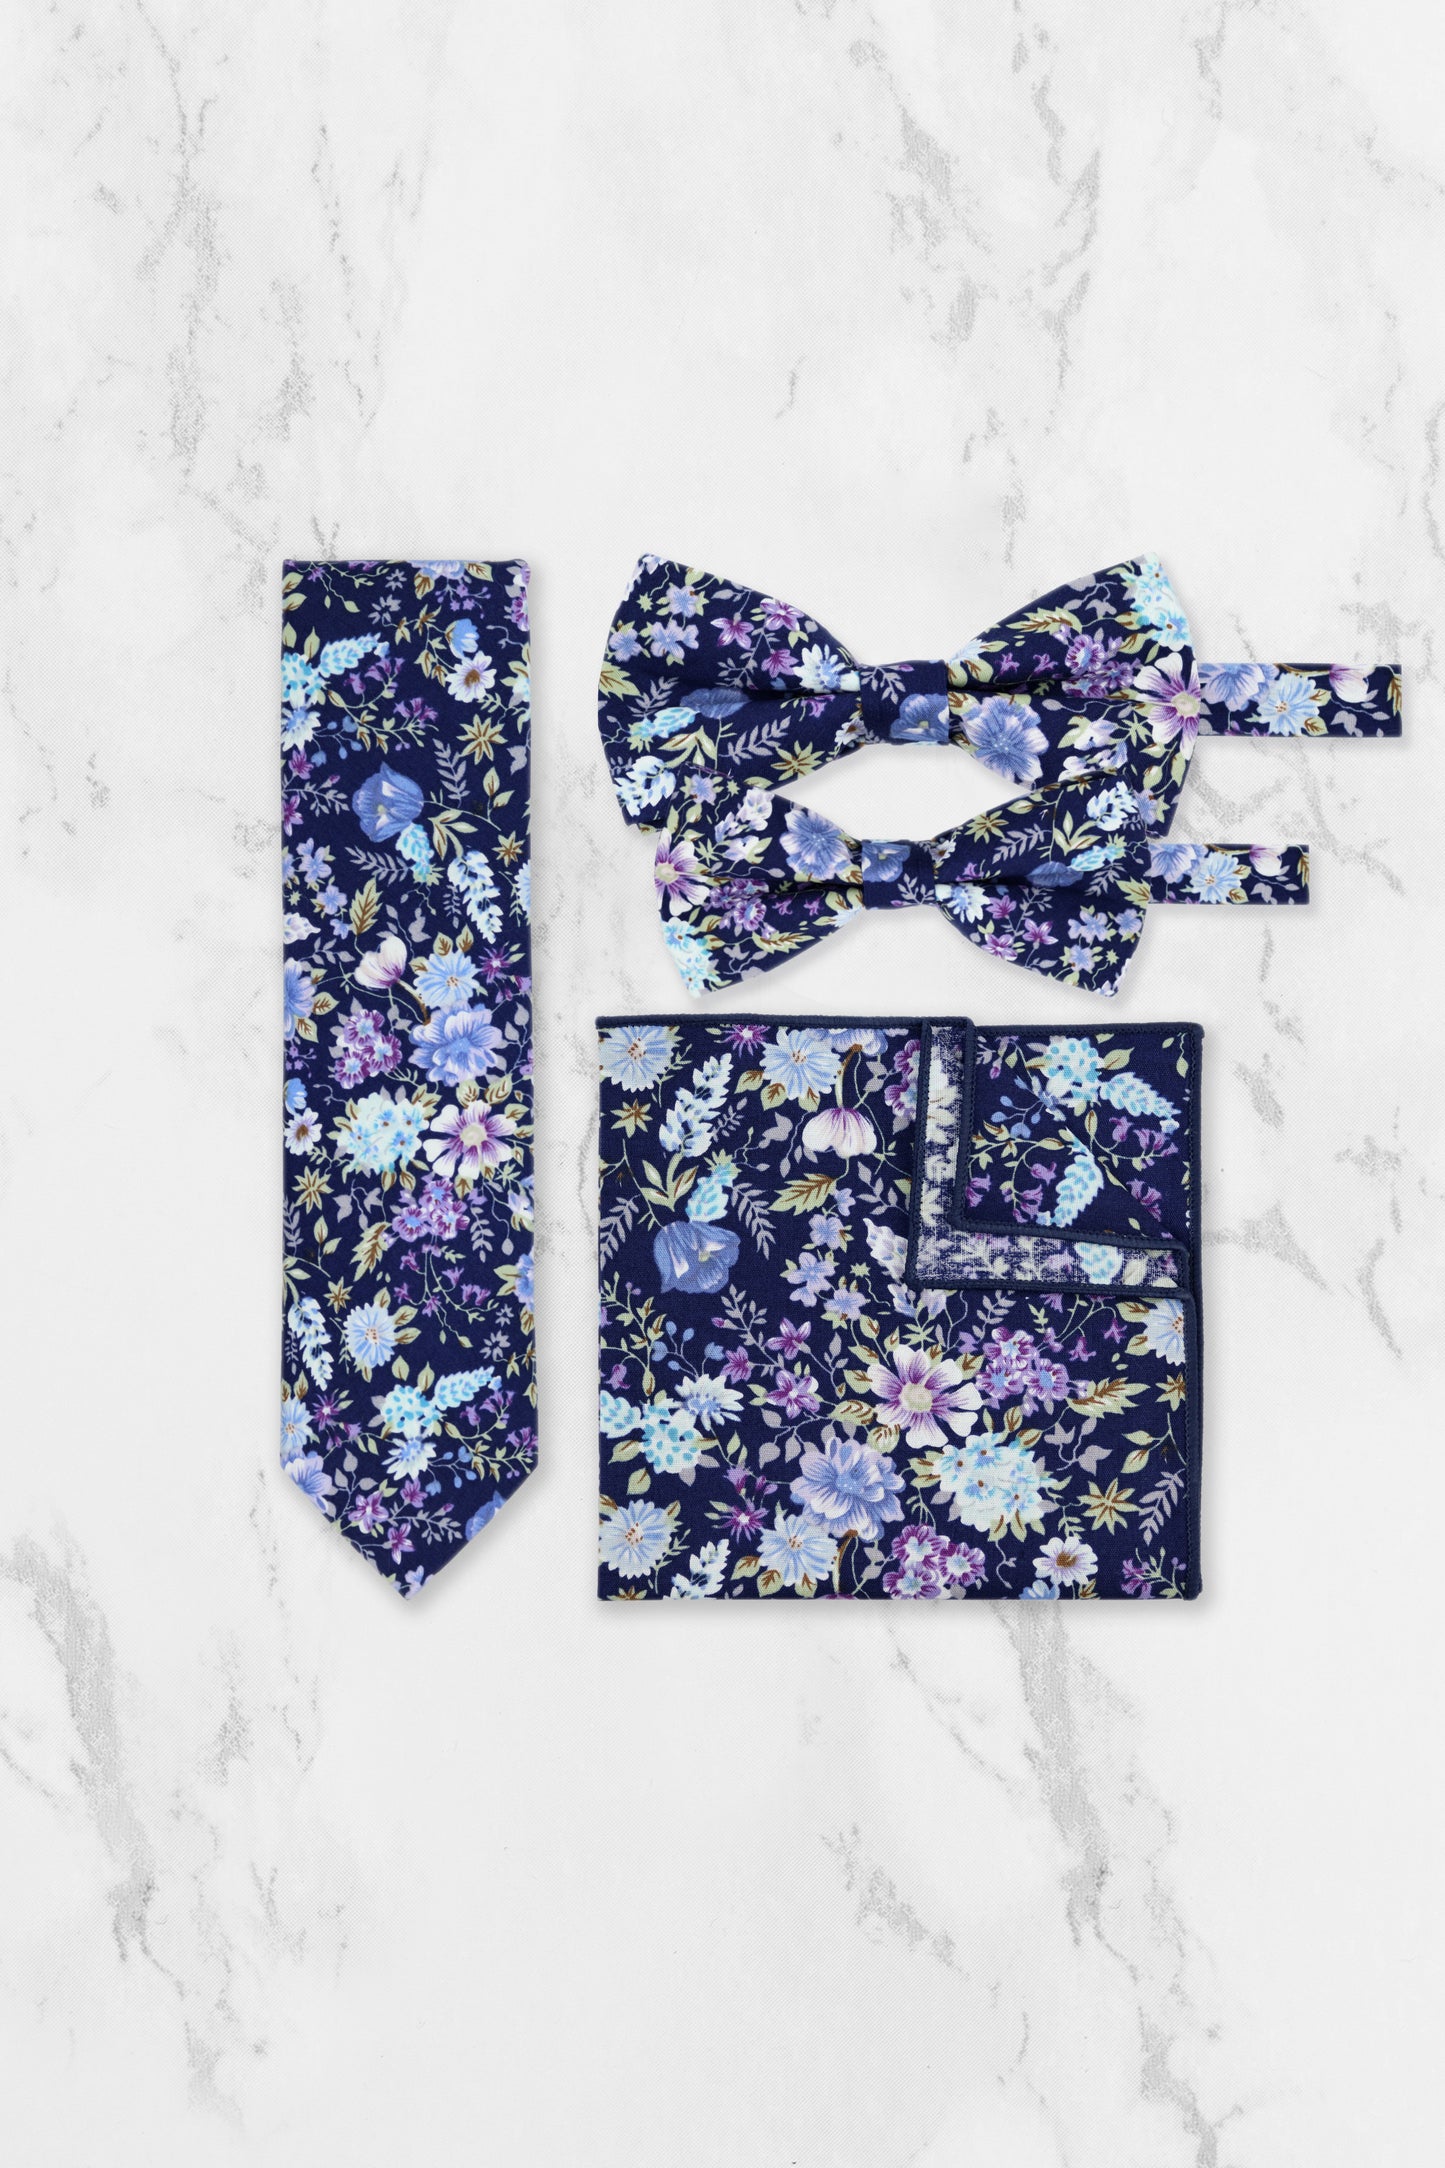 100% Cotton Floral Print Tie - Navy Blue & Purple